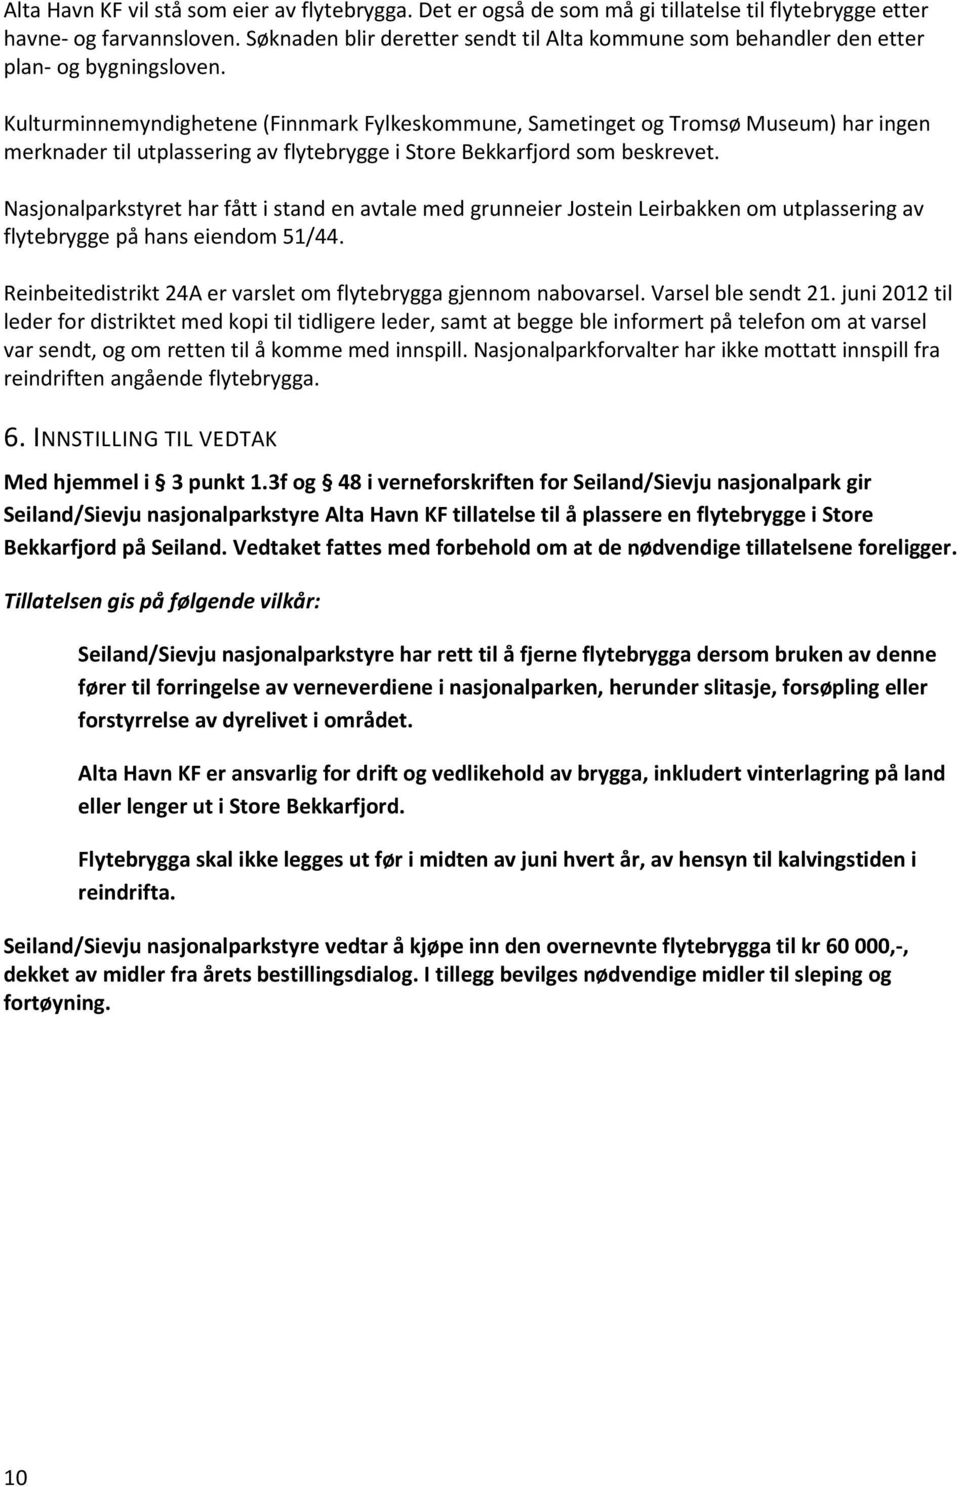 Kulturminnemyndighetene (Finnmark Fylkeskommune, Sametinget og Tromsø Museum) har ingen merknader til utplassering av flytebrygge i Store Bekkarfjord som beskrevet.